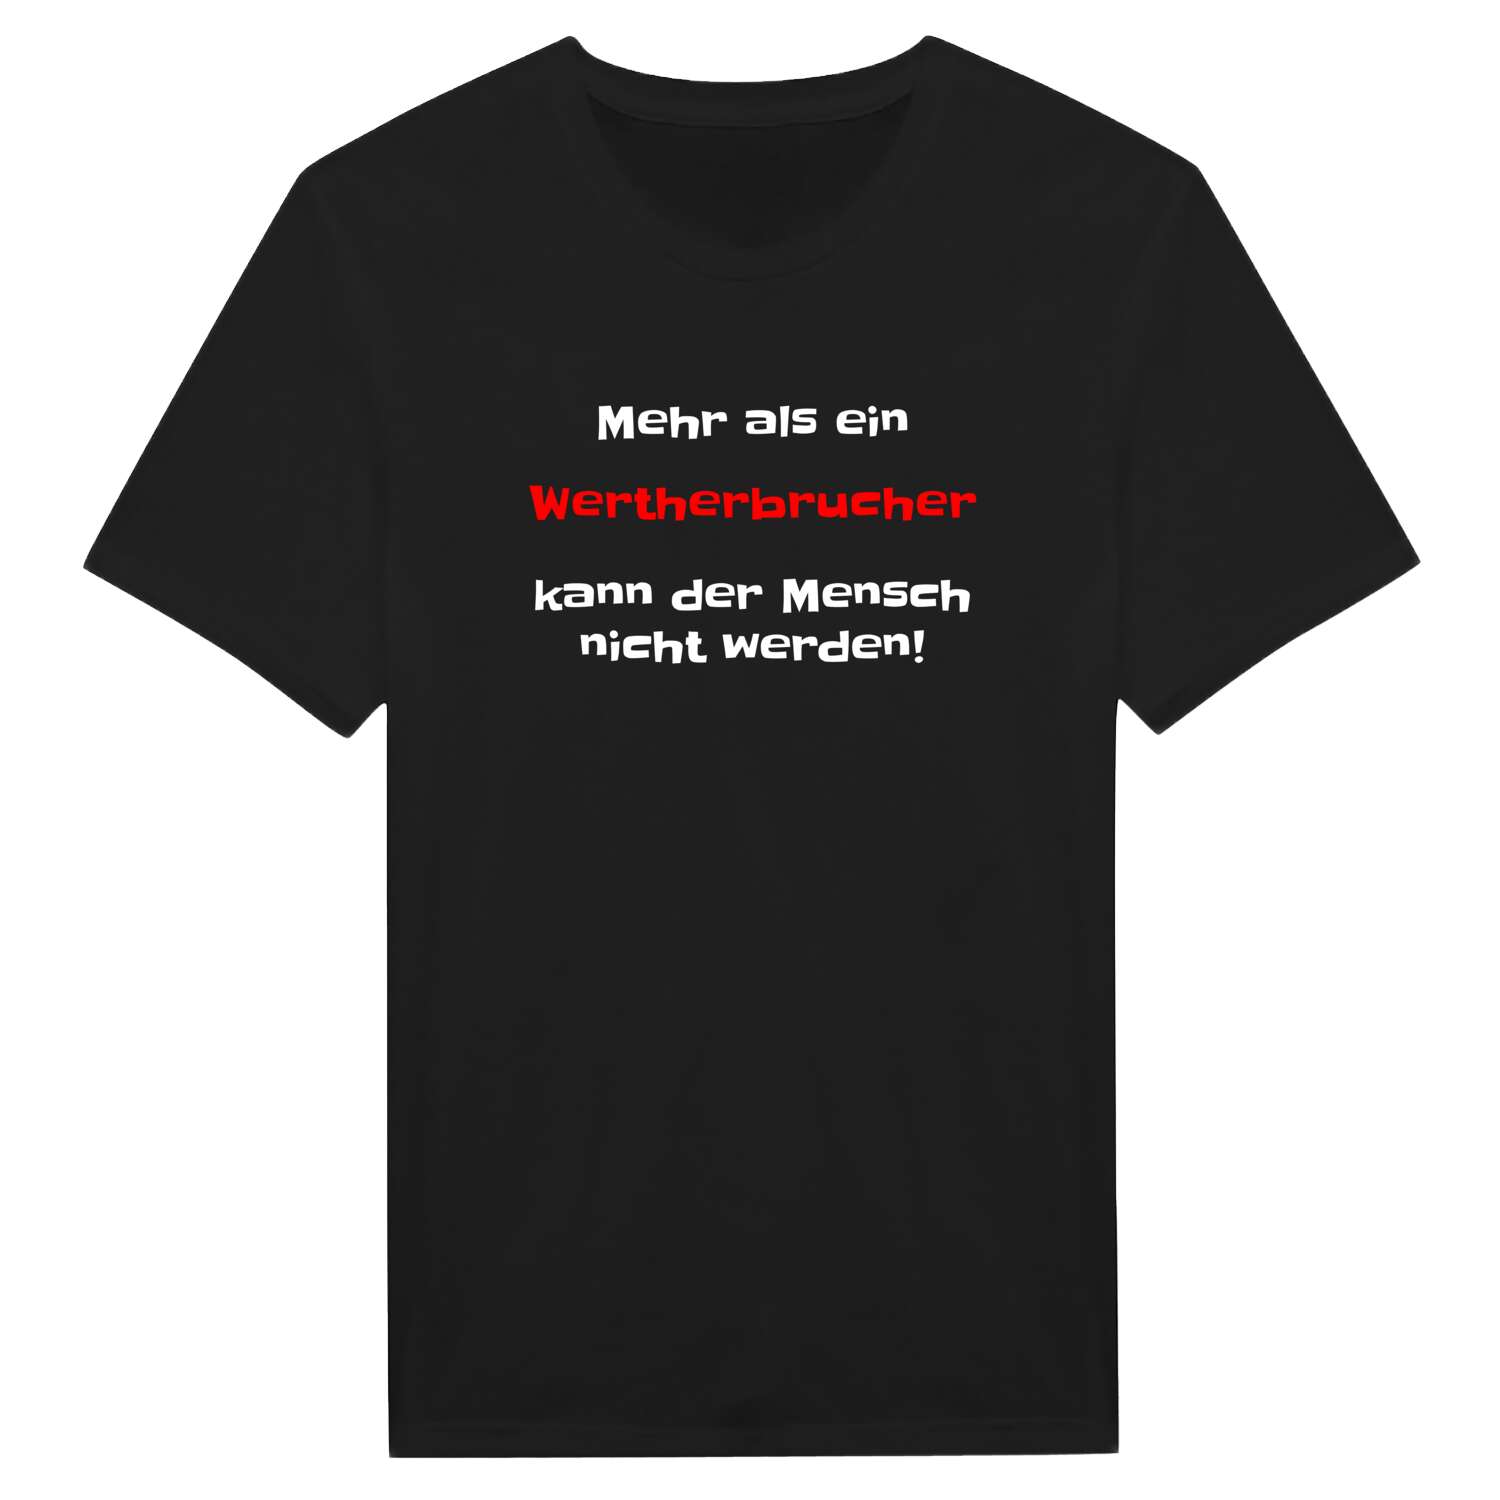 Wertherbruch T-Shirt »Mehr als ein«